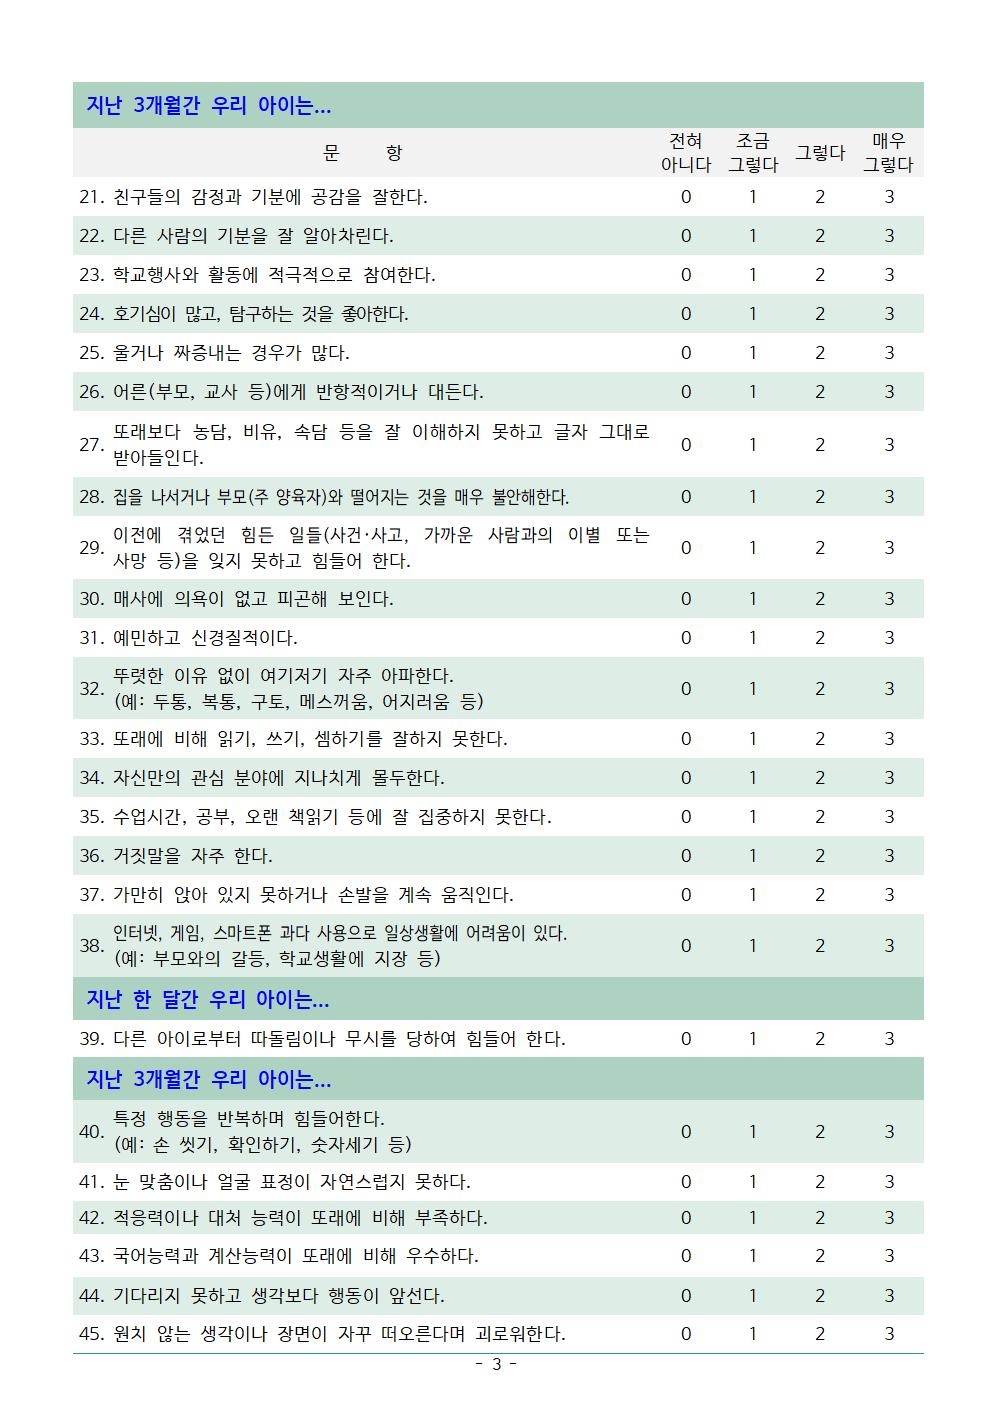 제27호-1, 4학년 학생정서행동특성검사 안내003